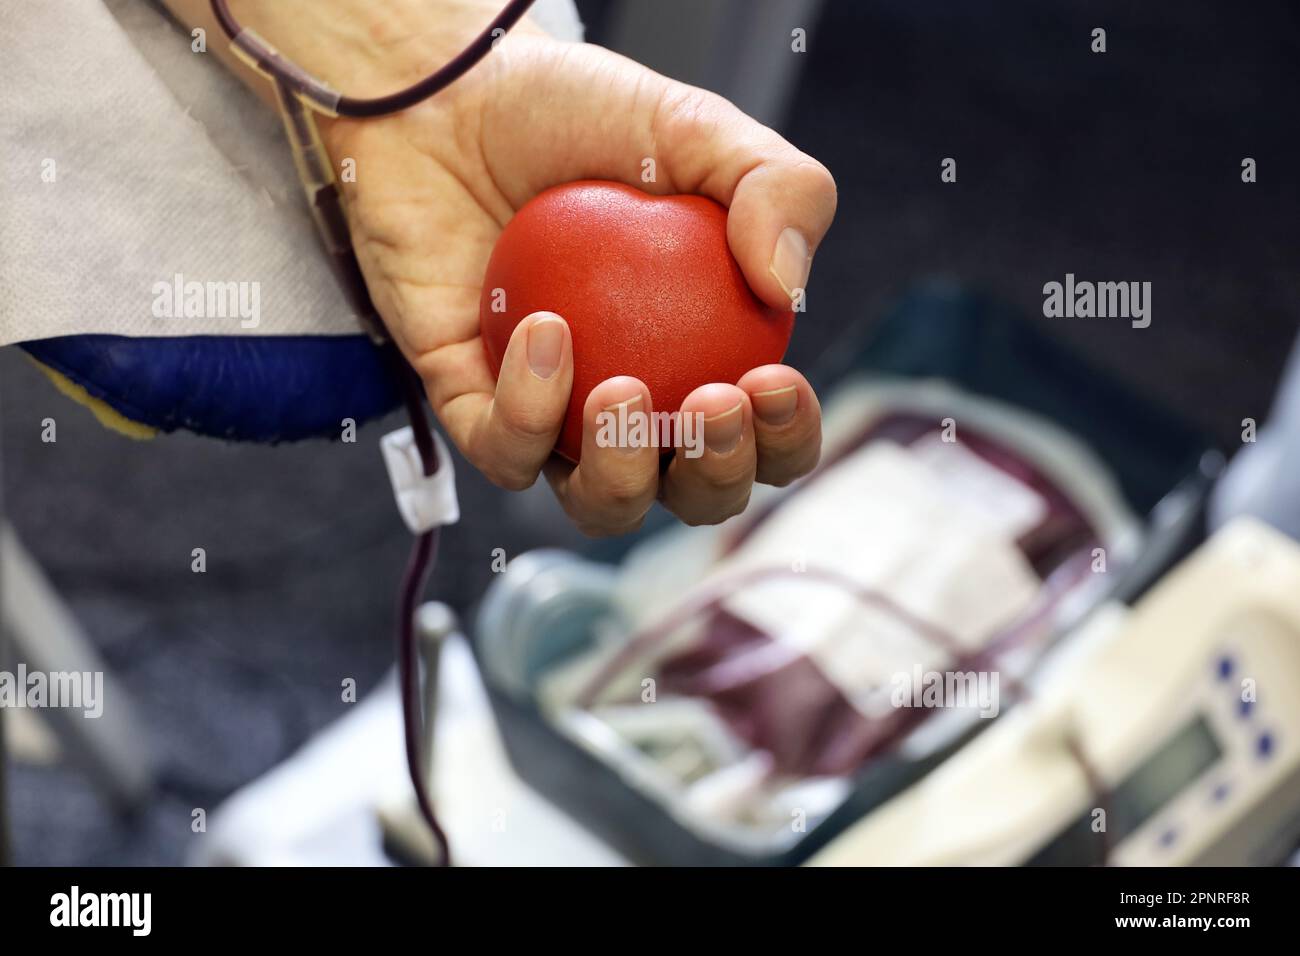 Homme donneur de sang dans la chaise pendant le don avec boule rouge bouncy en main, foyer sélectif. Concept de don, de transfusion, de soins de santé Banque D'Images